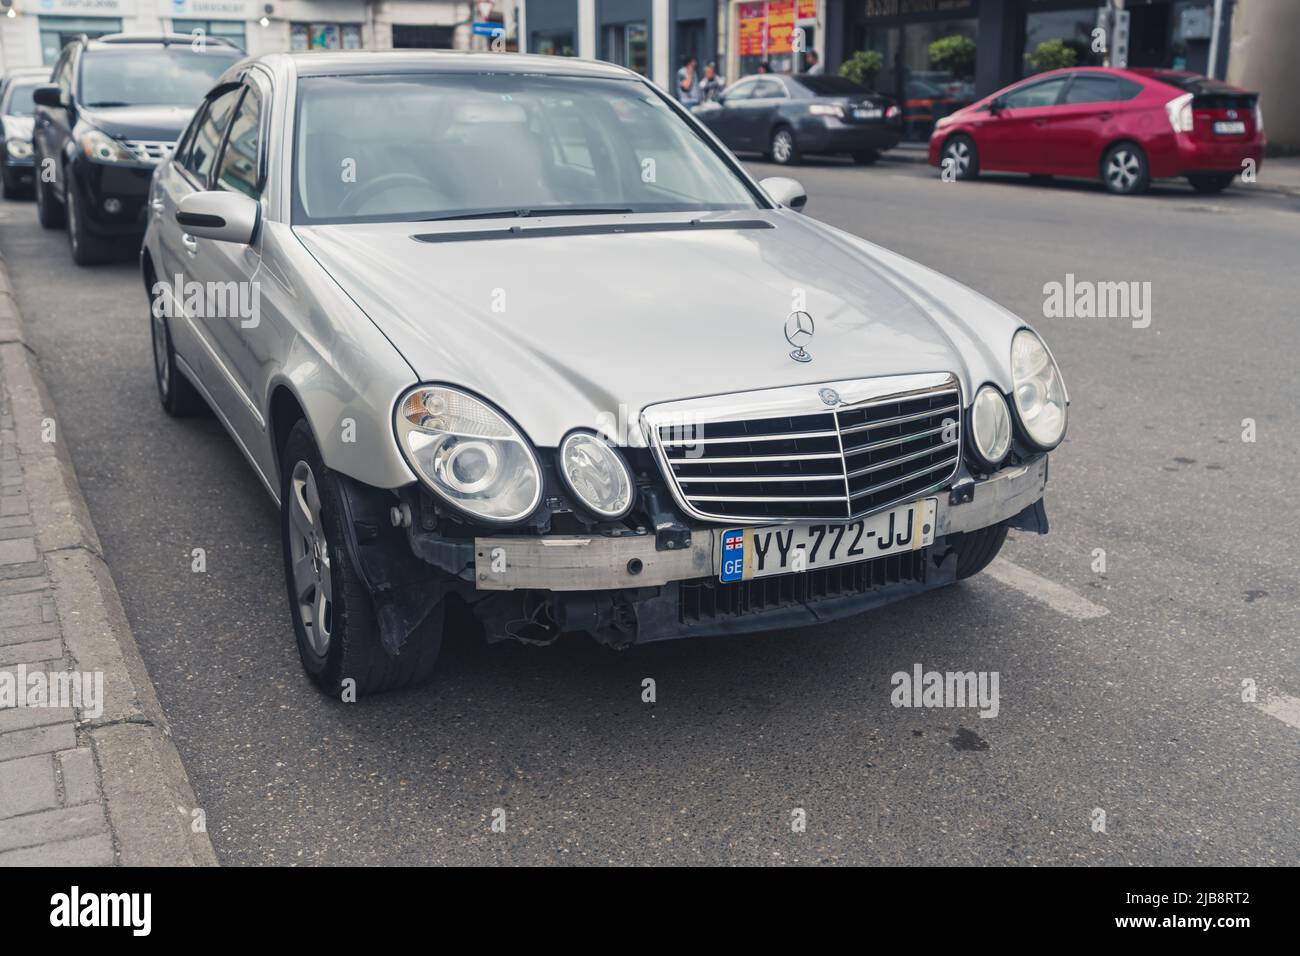 16.05.2022. Kutaisi, Georgia. Mercedes Benz senza paraurti in strada. Foto di alta qualità Foto Stock